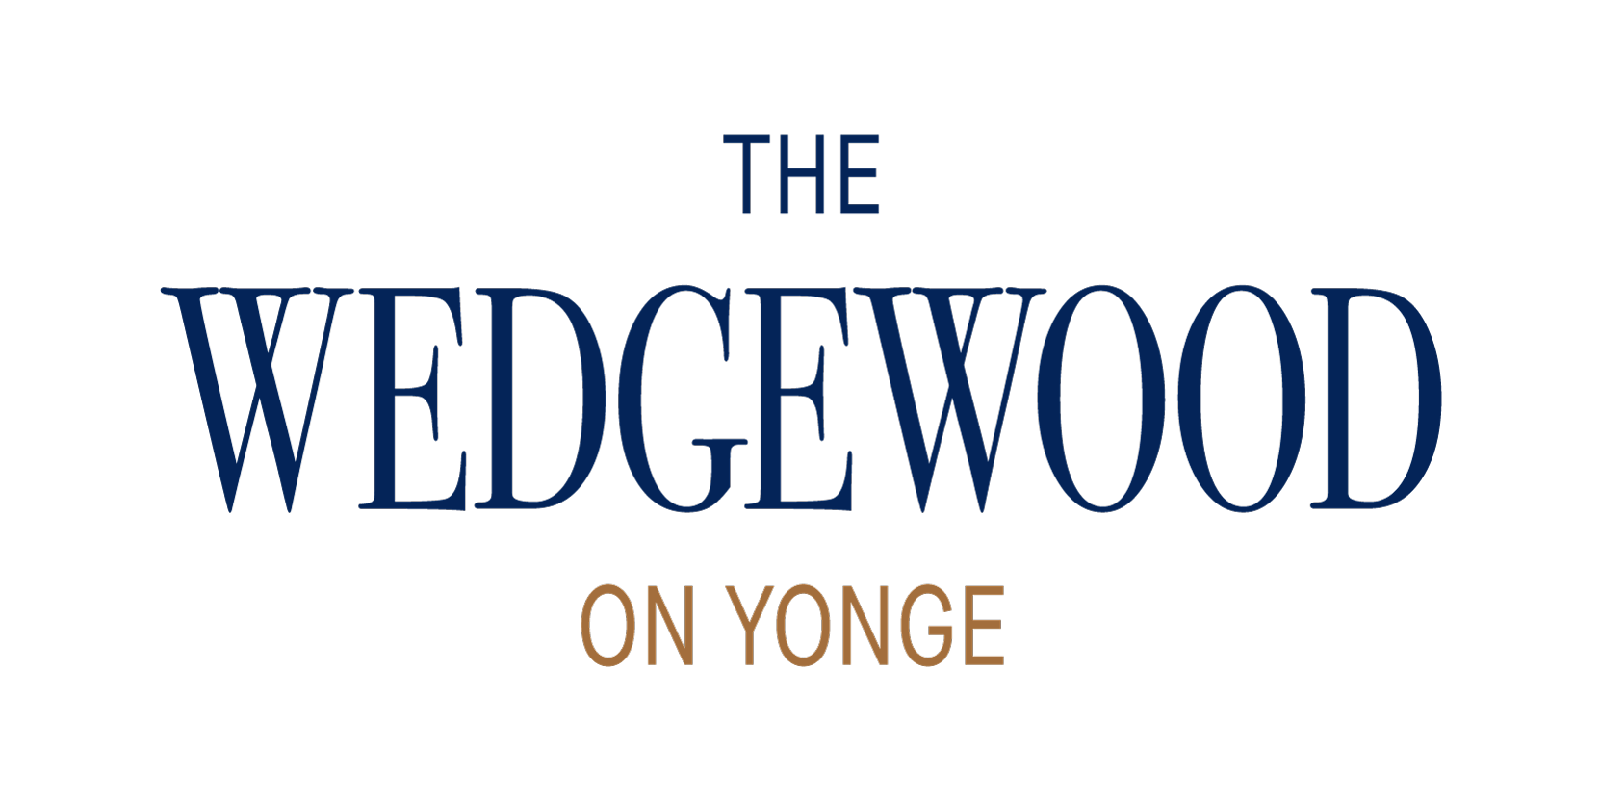 The Wedgewood on Yonge